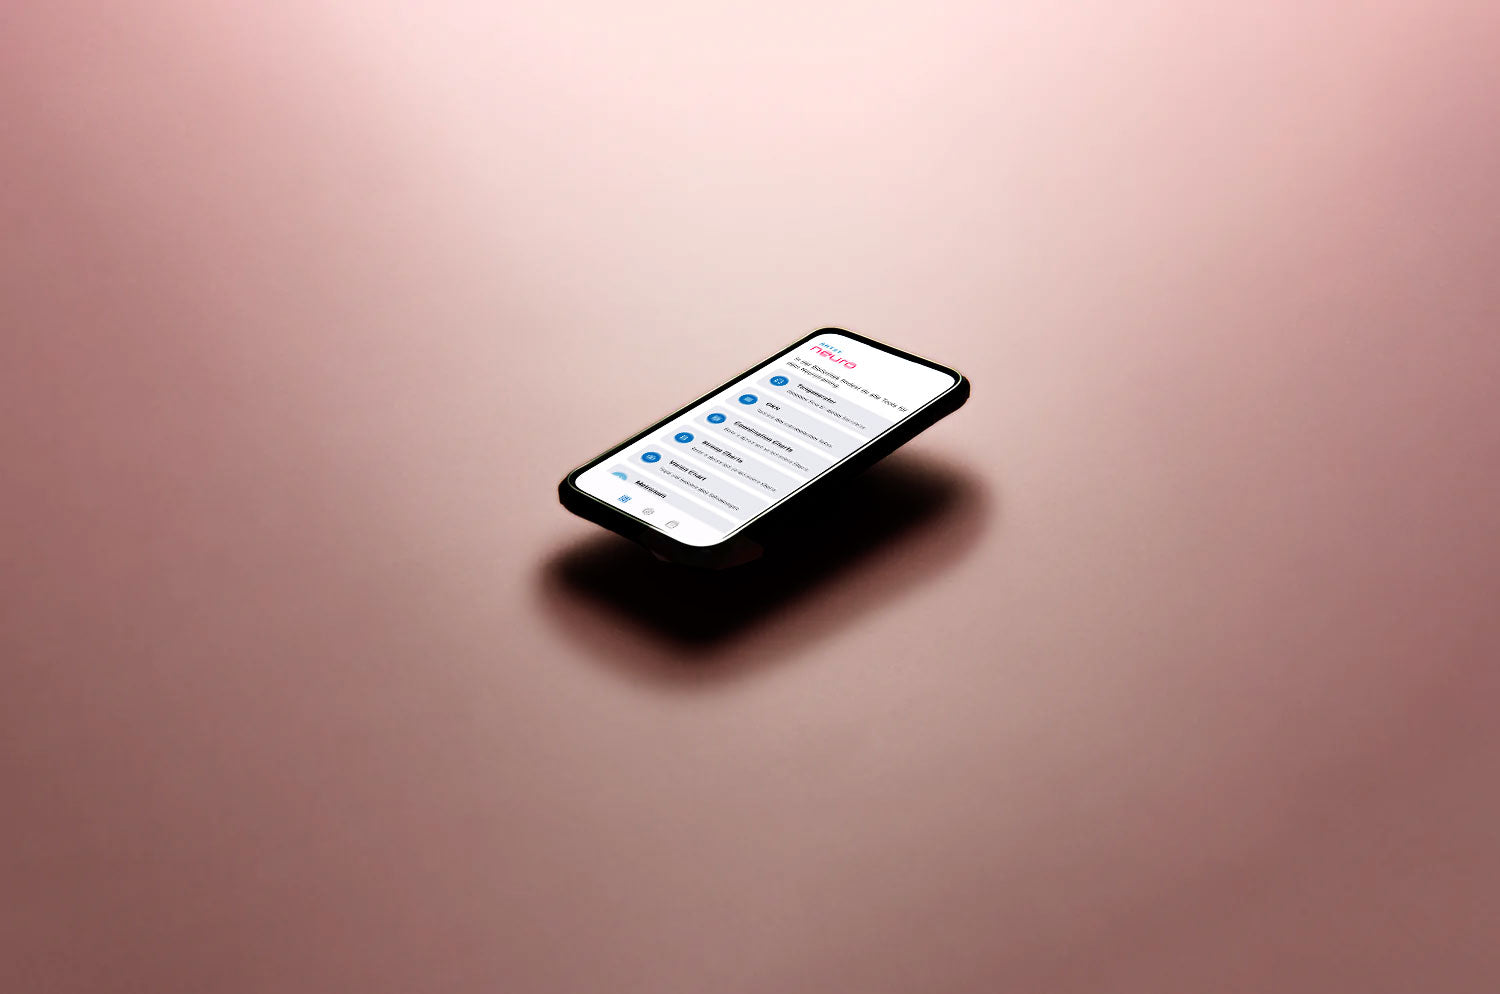 Ein Smartphone schwebt frei über einer grauen Farbfläche, auf dem Display ist die ARTZT neuro App geöffnet.